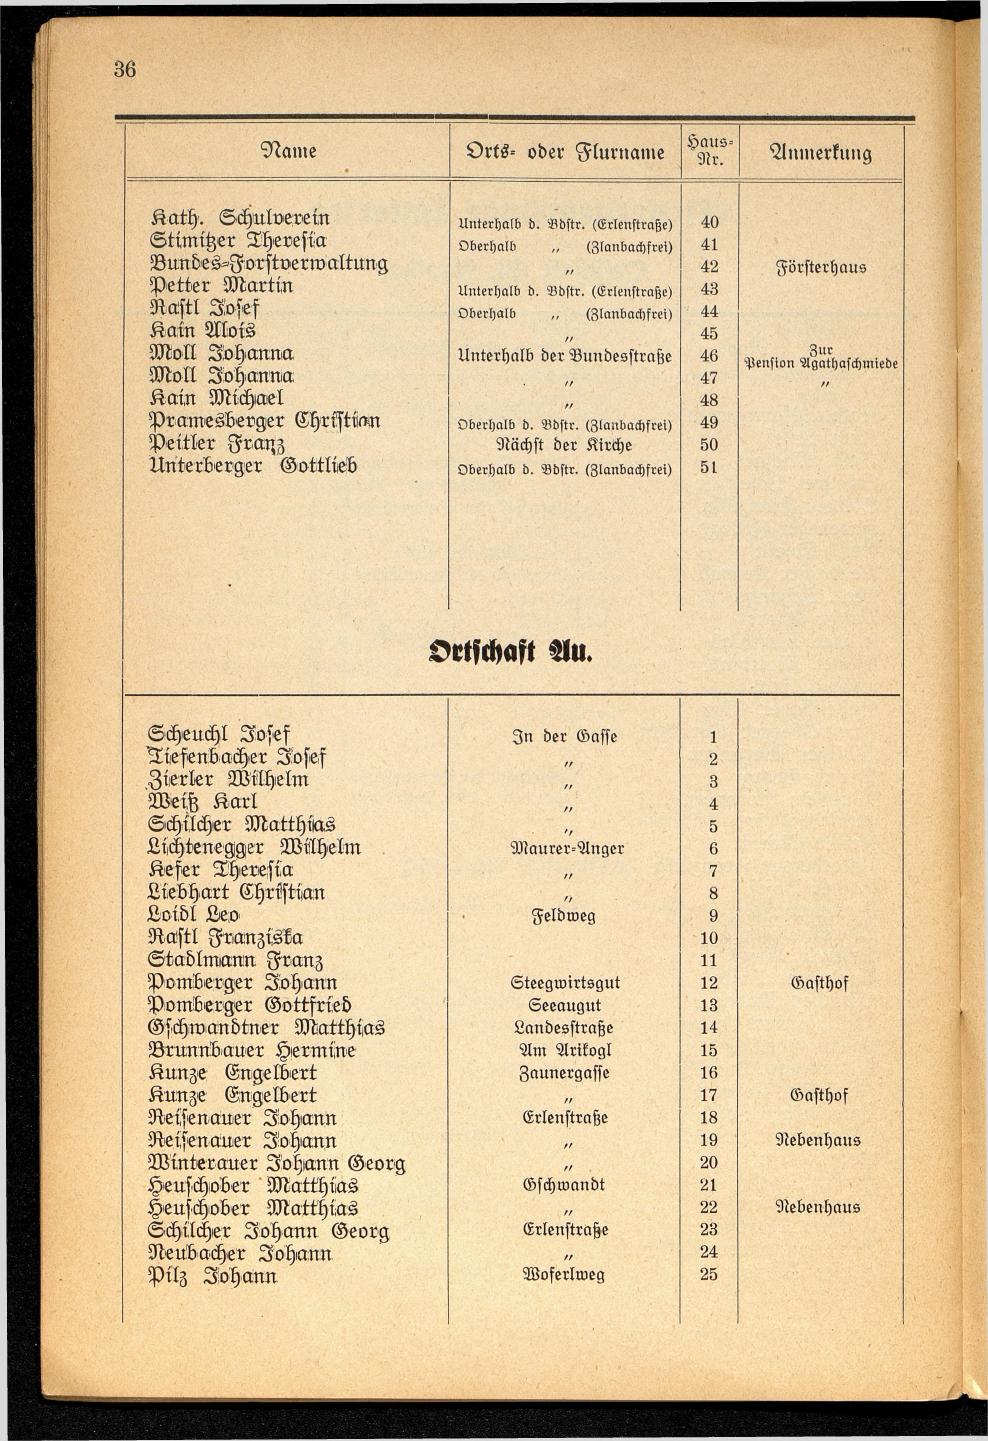 Häuser-Verzeichnis der Gemeinde Goisern nach dem Stande von November 1937 - Seite 38